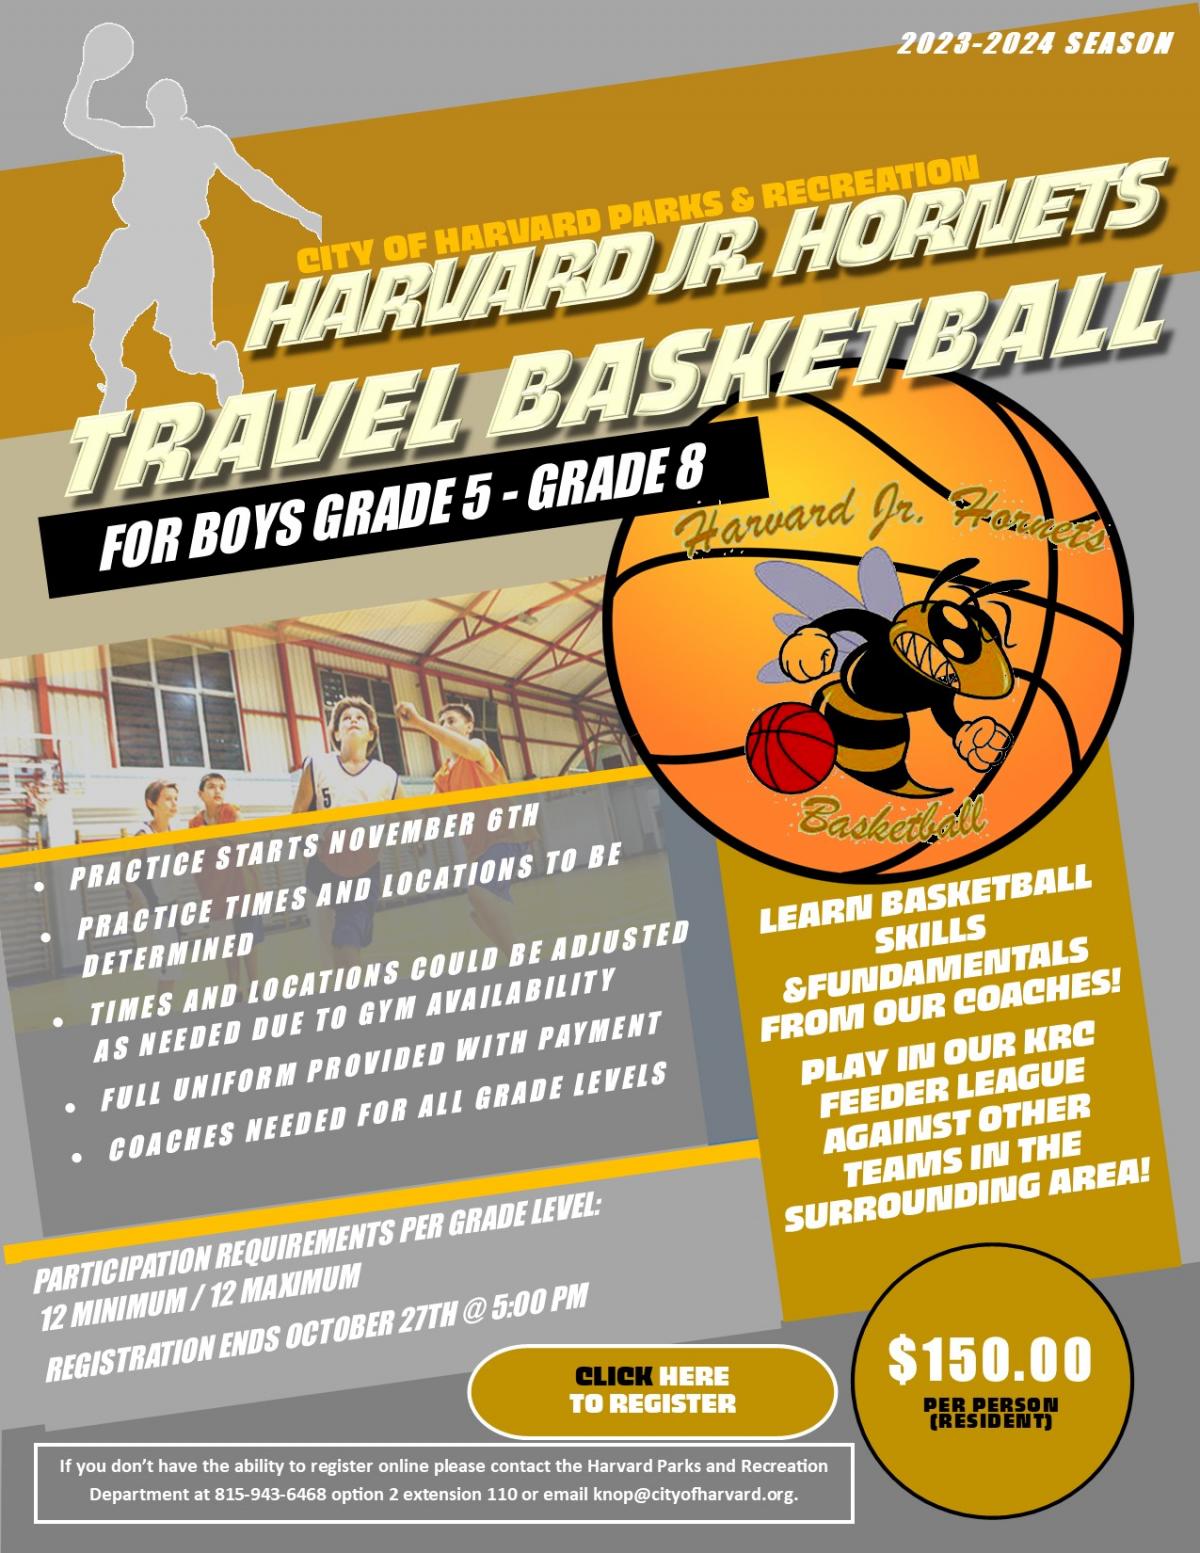 Harvard Jr Hornets Travel Basketball